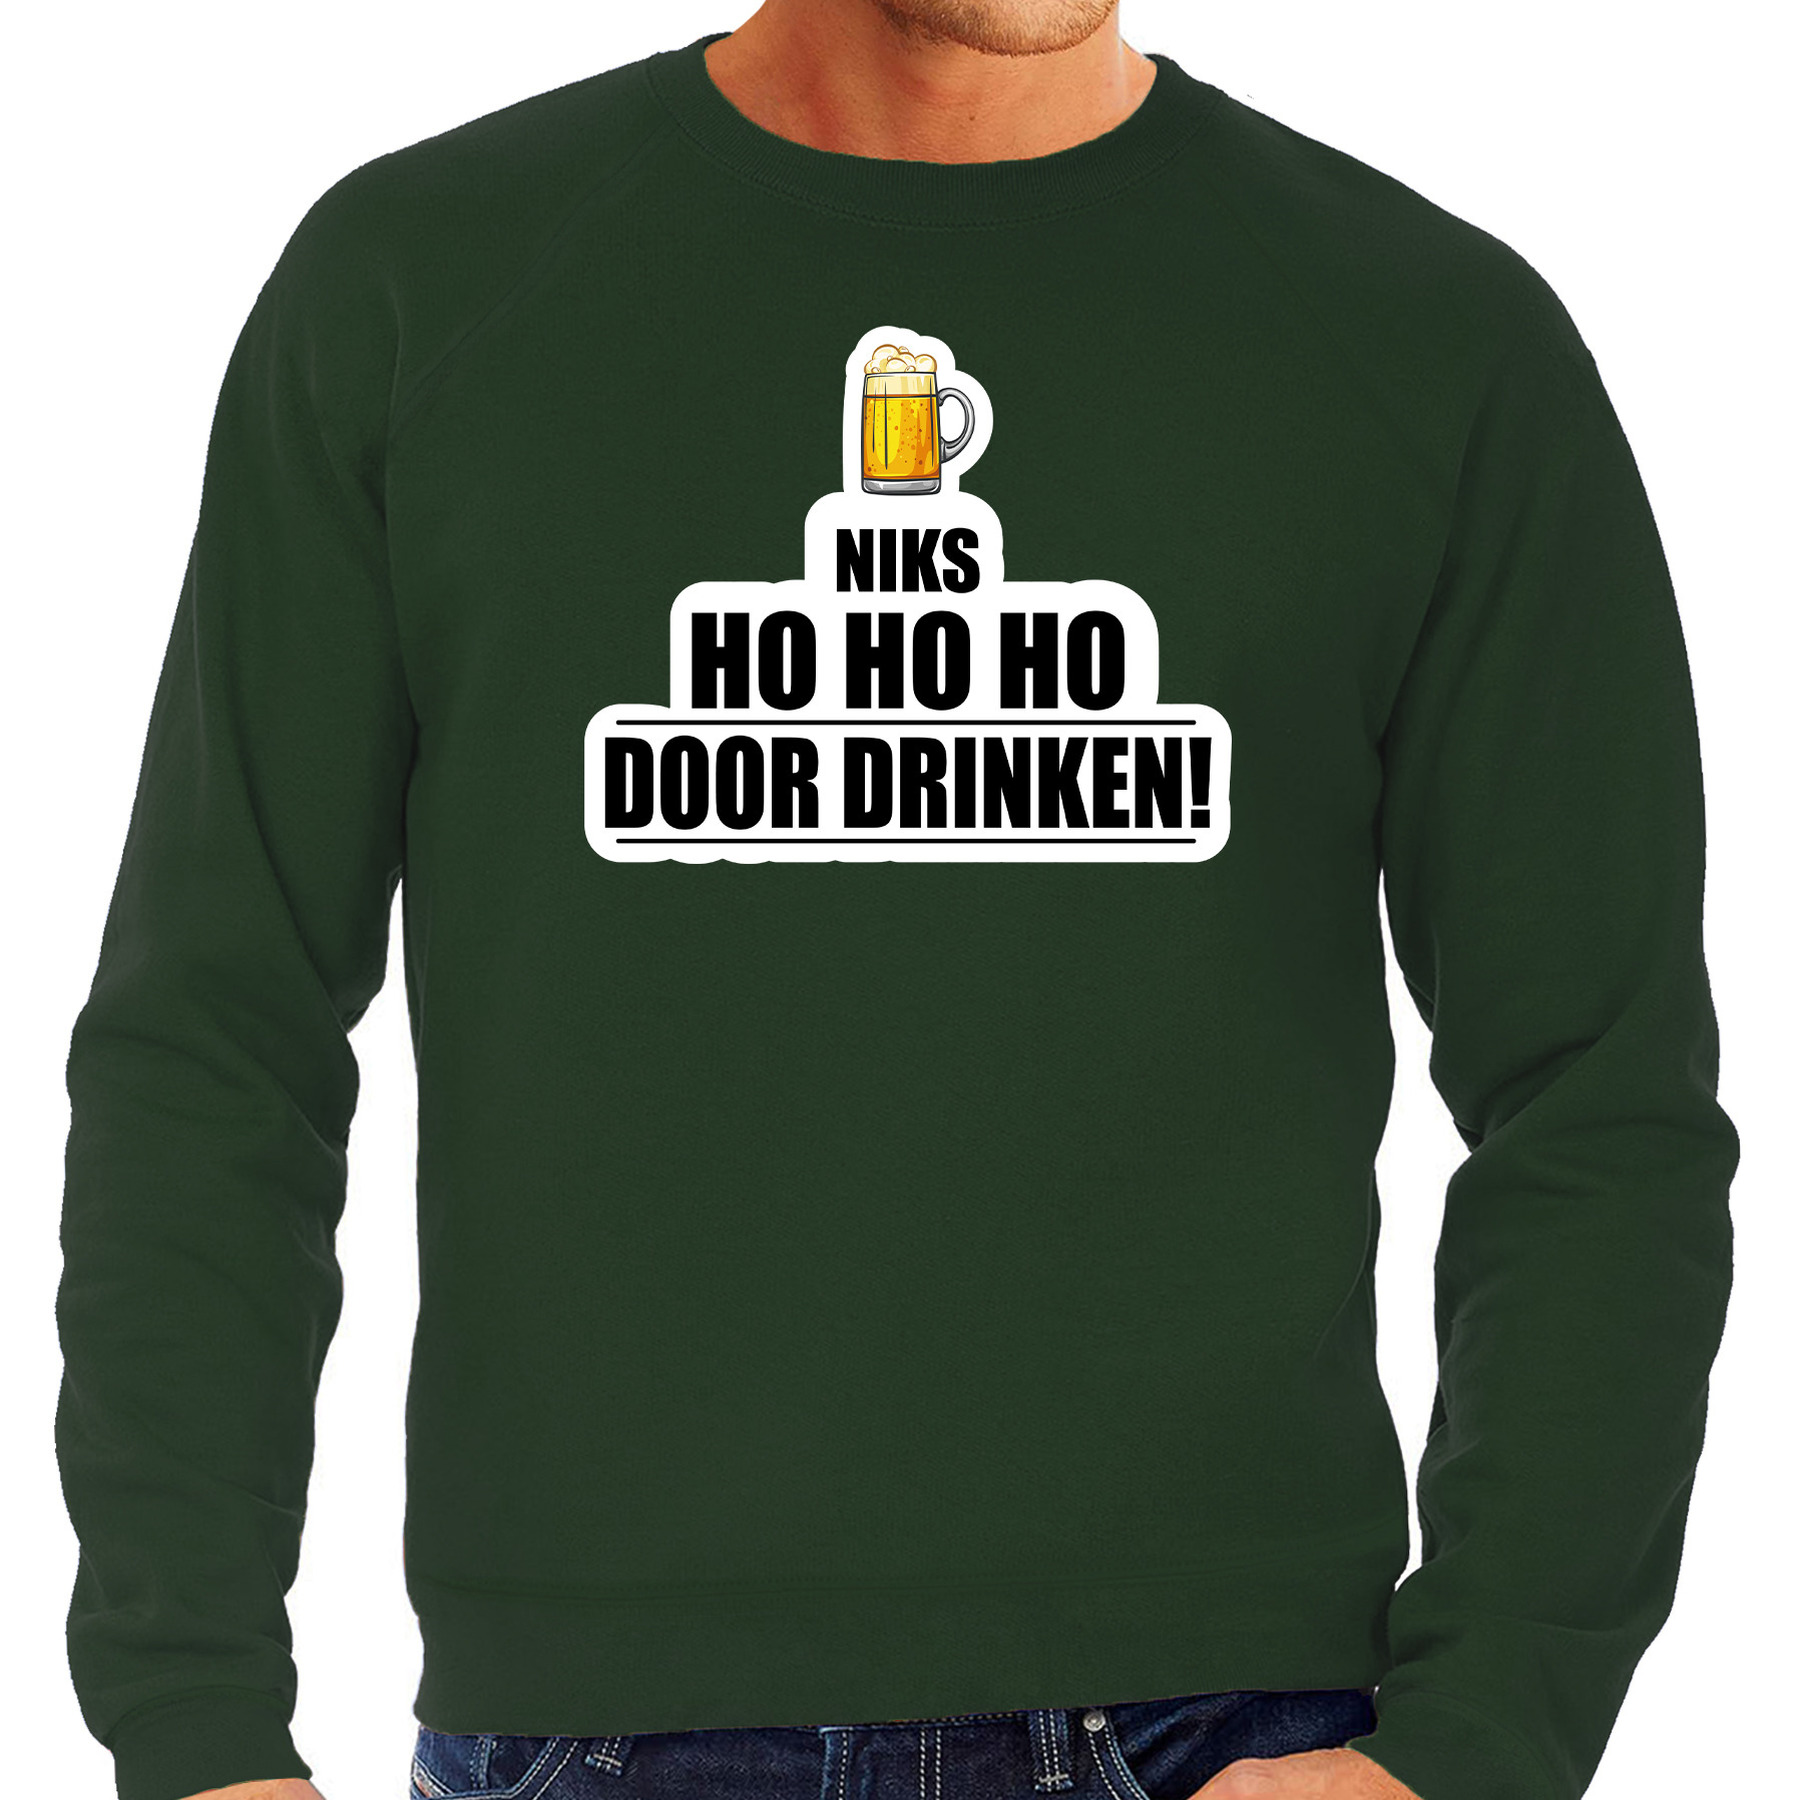 Niks ho ho ho bier doordrinken foute Kerst sweater-trui groen voor heren